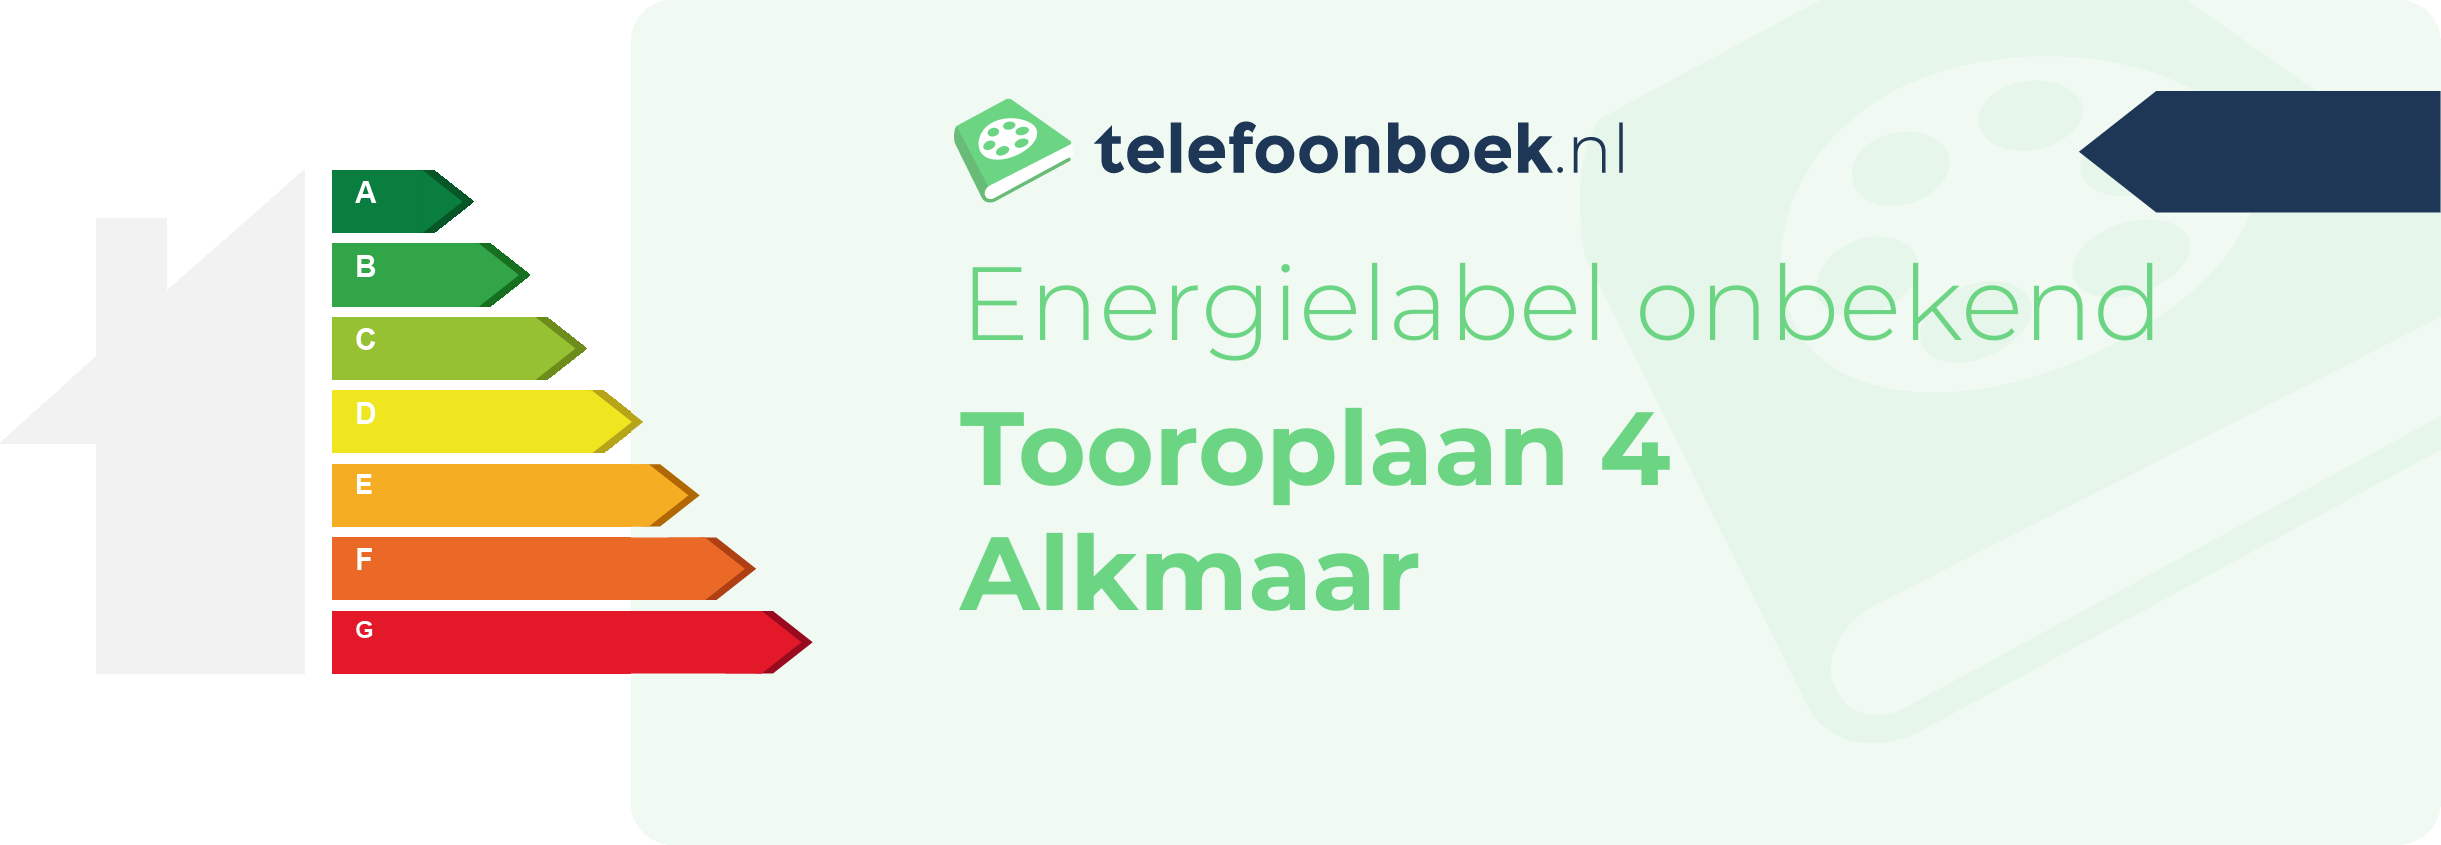 Energielabel Tooroplaan 4 Alkmaar